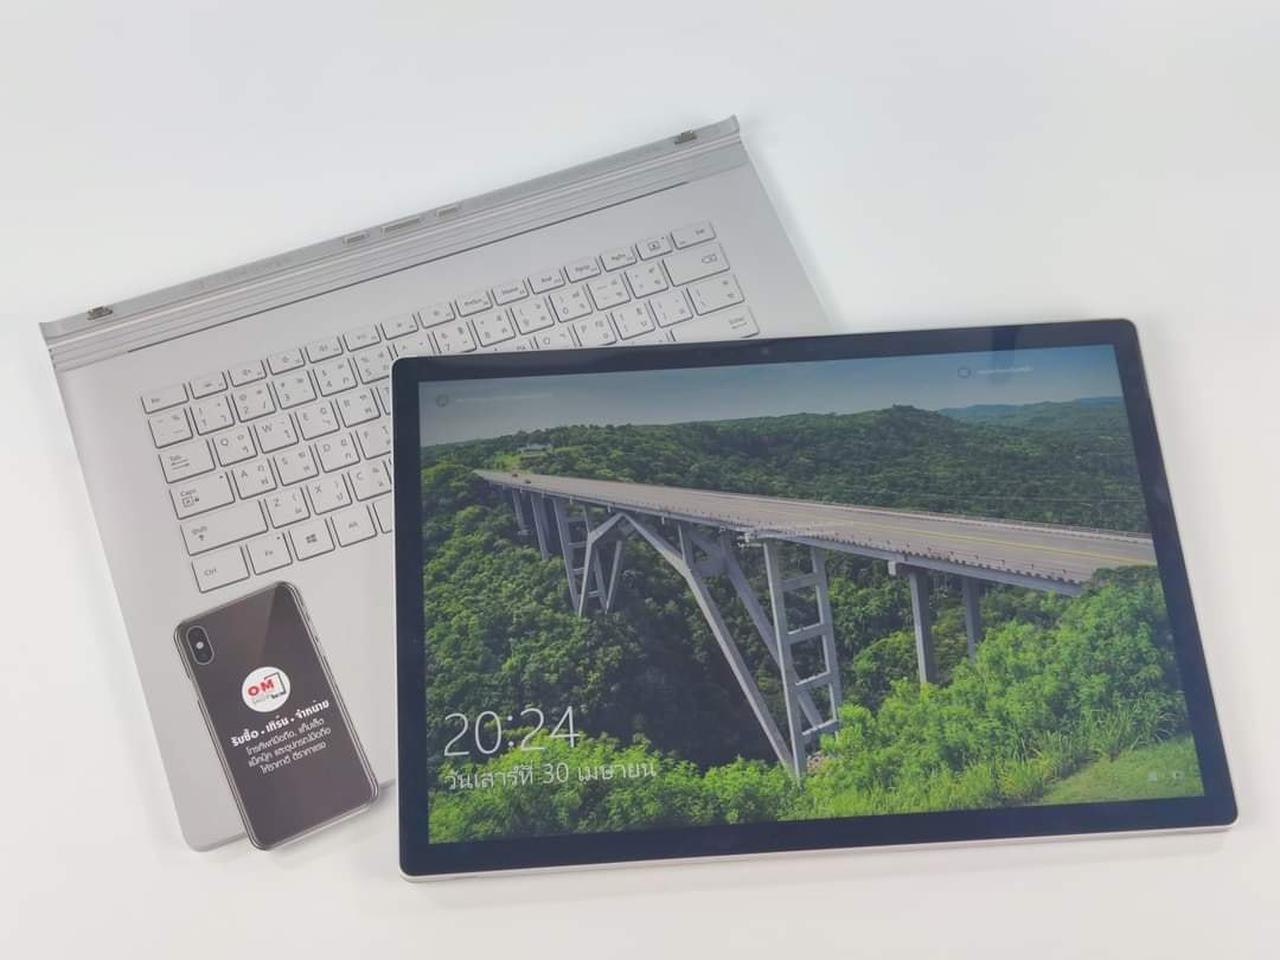 ขาย/แลก Microsoft Surface Book3 15นิ้ว /Core i7-1065G7 /Ram32 /HDD512 /GTX 1660 Ti Max-Q / สวยครบกล่อง เพียง 52,900 บาท  รูปเล็กที่ 3